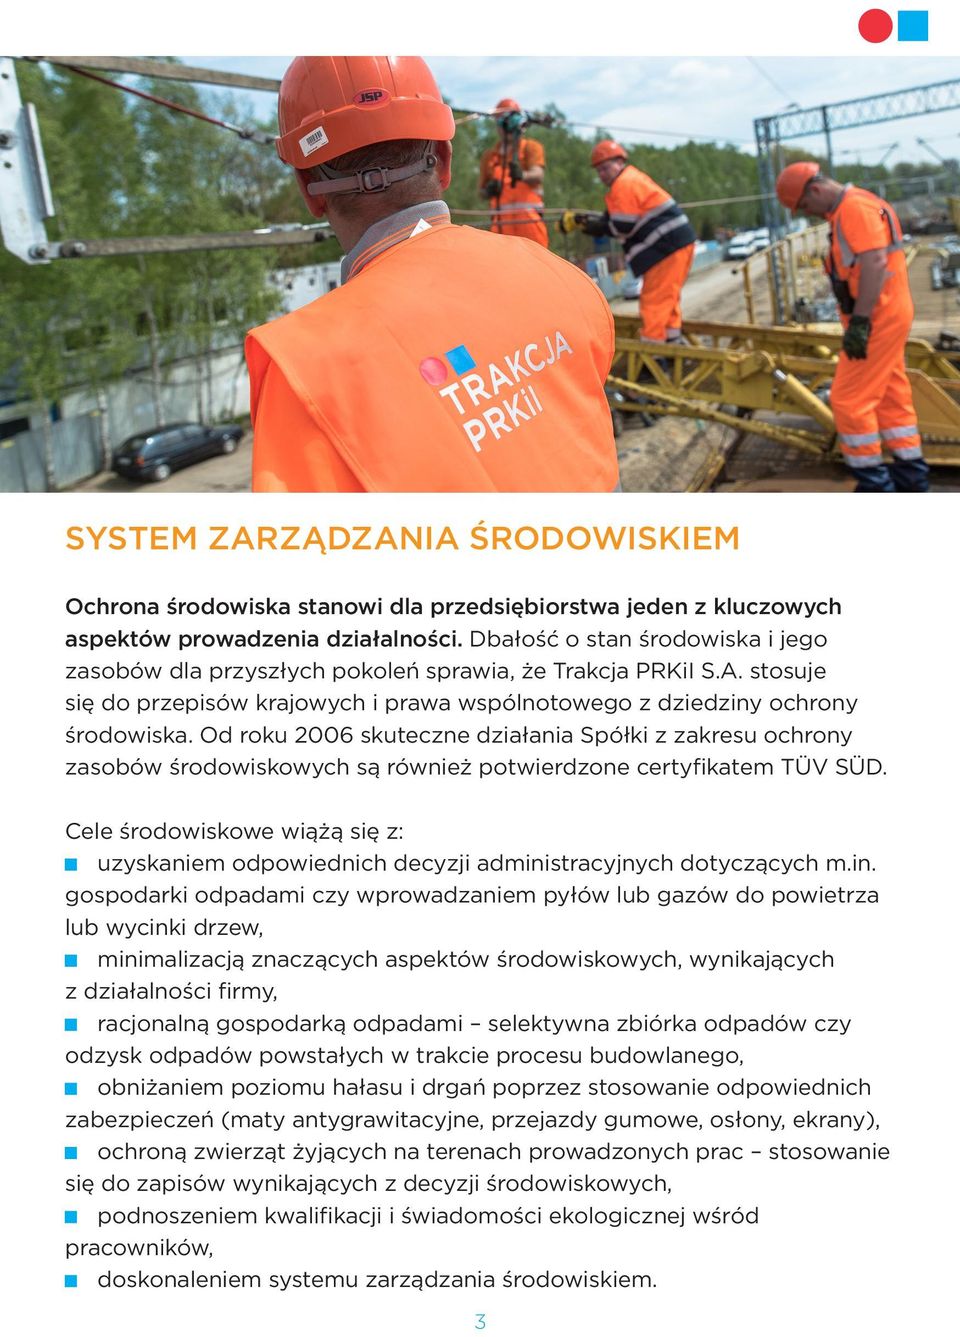 Od roku 2006 skuteczne działania Spółki z zakresu ochrony zasobów środowiskowych są również potwierdzone certyfikatem TÜV SÜD.